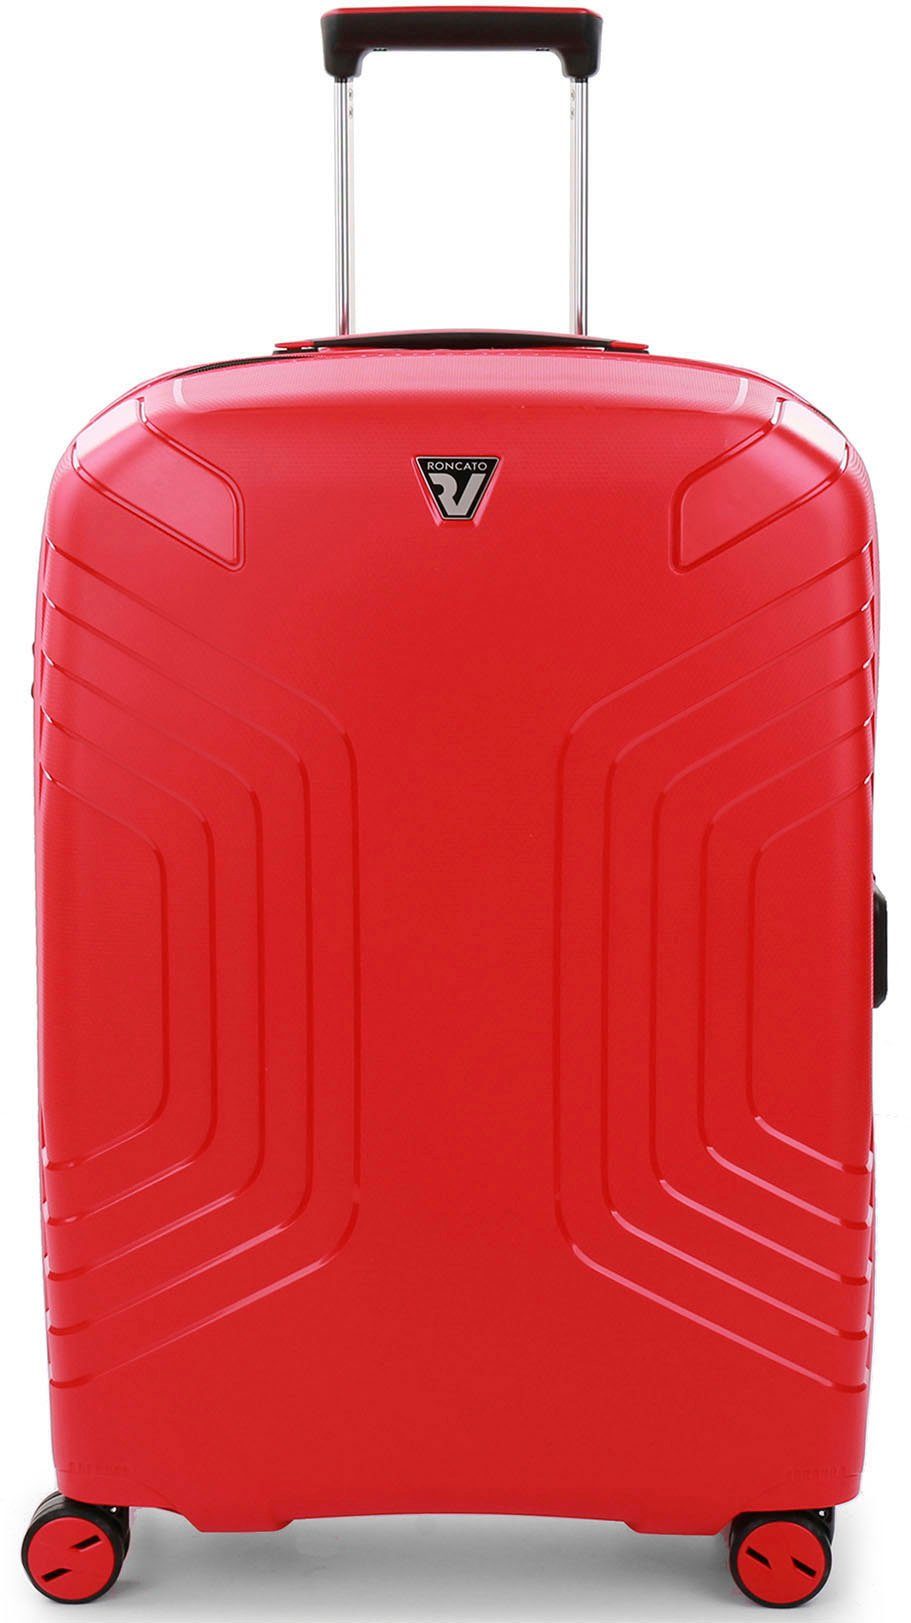 RONCATO Hartschalen-Trolley Ypsilon 4.0, 69 cm, rot, 4 Rollen, mit Volumenerweiterung rosso